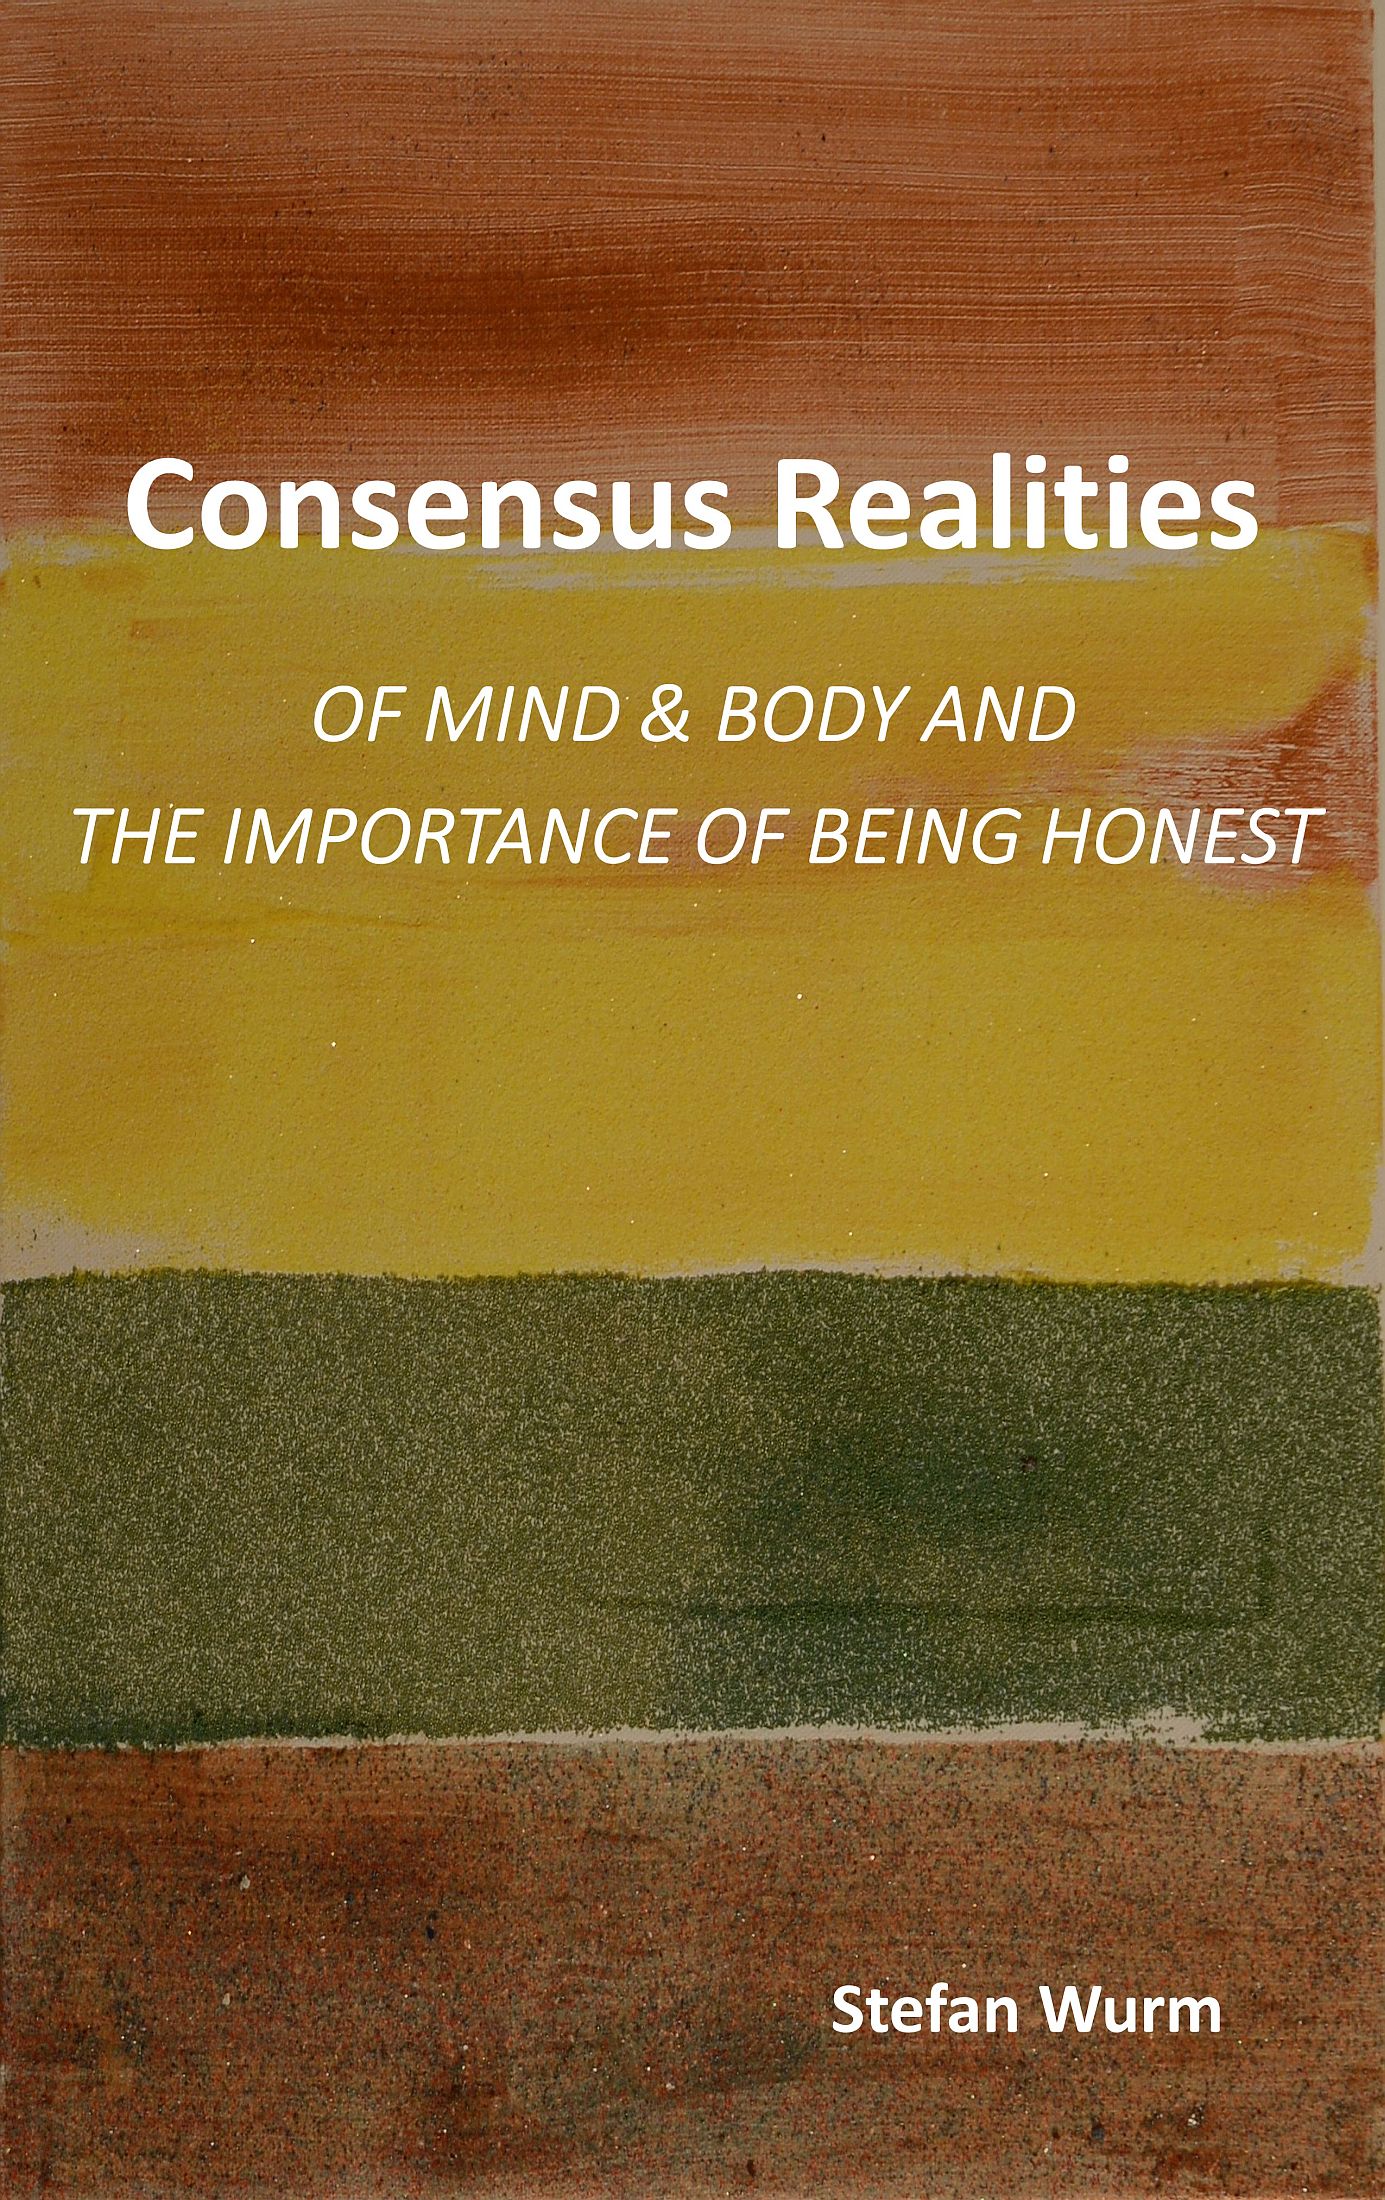 Stefan Wurm: Consensus Realities